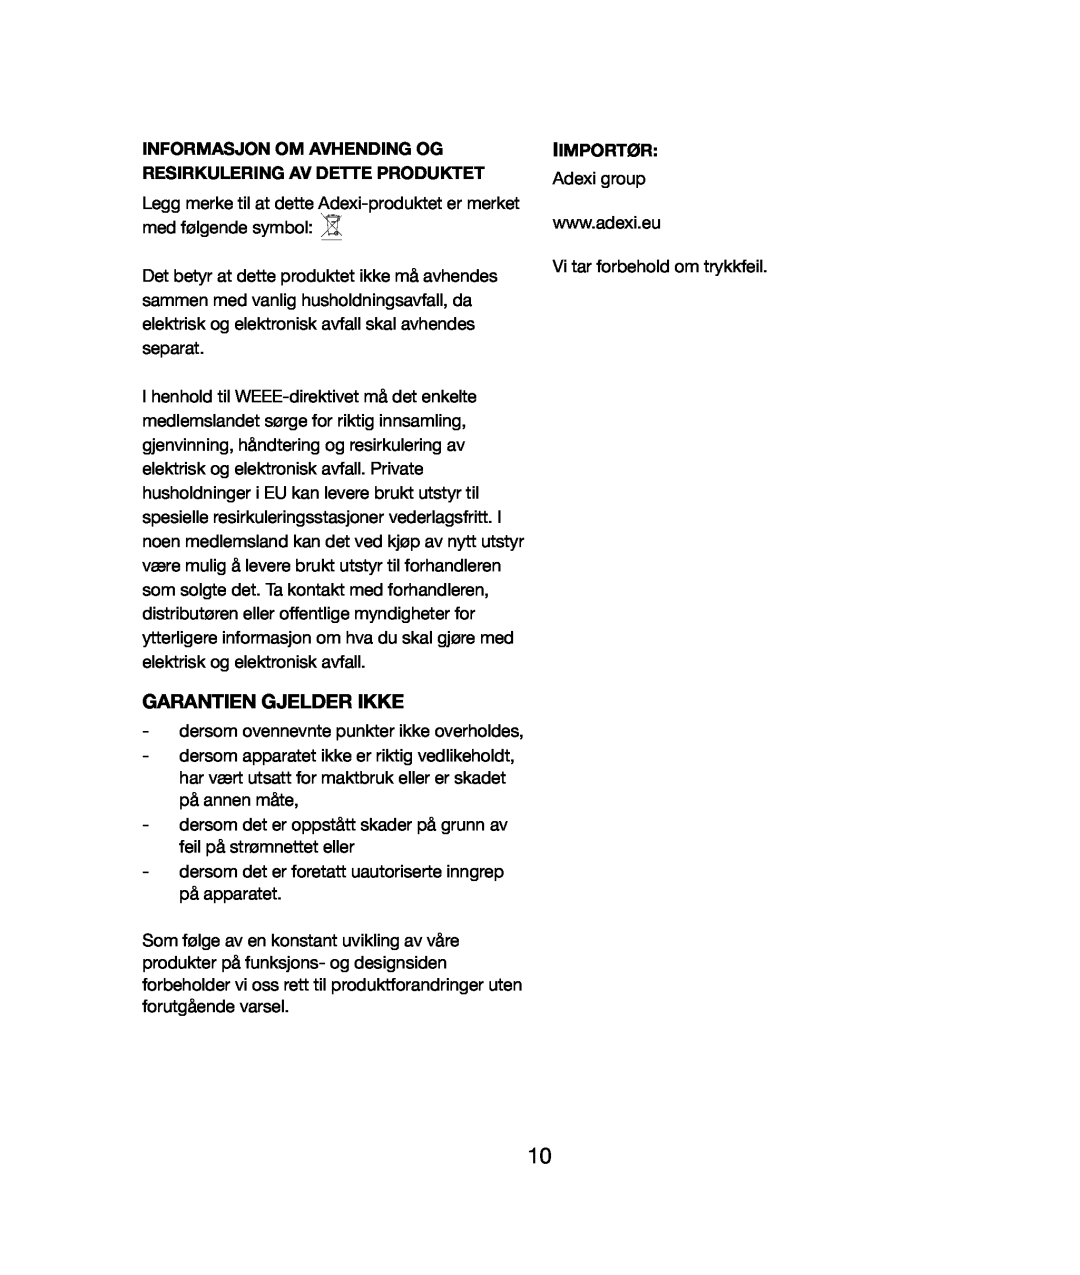 Melissa 021 & 028 manual Garantien Gjelder Ikke, Informasjon Om Avhending Og Resirkulering Av Dette Produktet, Iimportør 